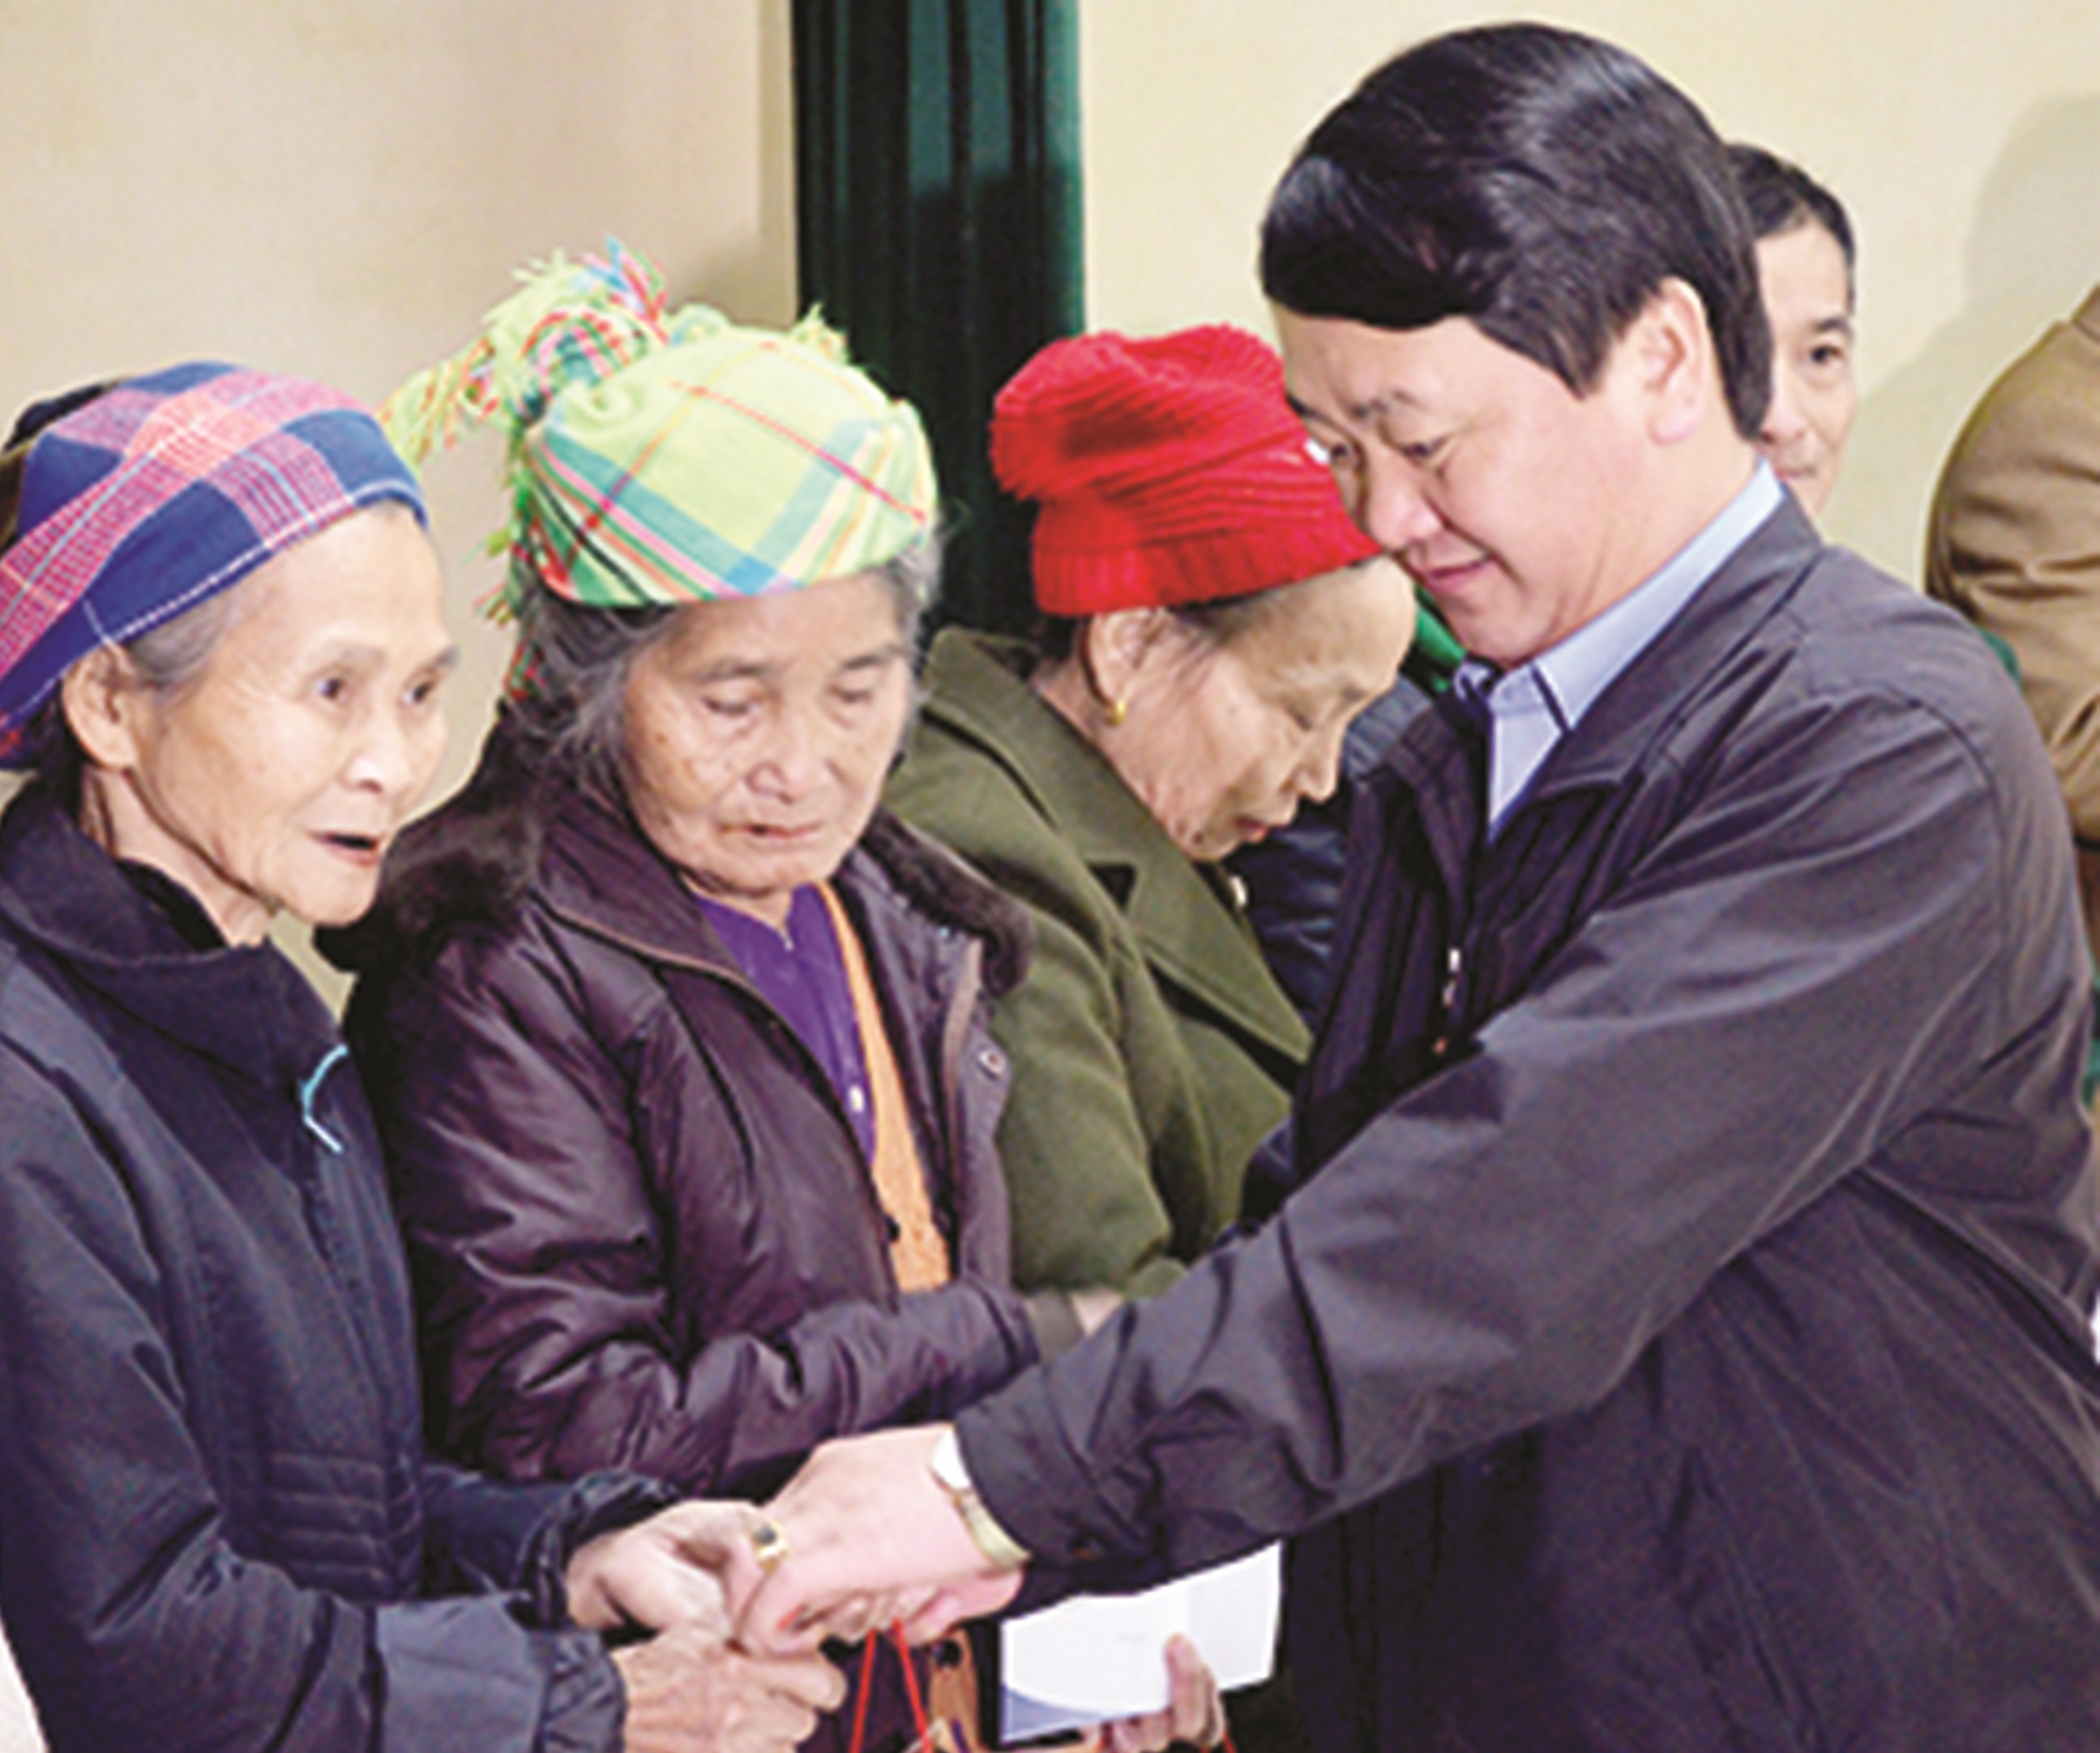 Đồng chí Hầu A Lềnh tặng quà cho các hộ nghèo trên địa bàn xã Việt Hồng, huyện Trấn Yên, tỉnh Yên Bái (Năm 2018).